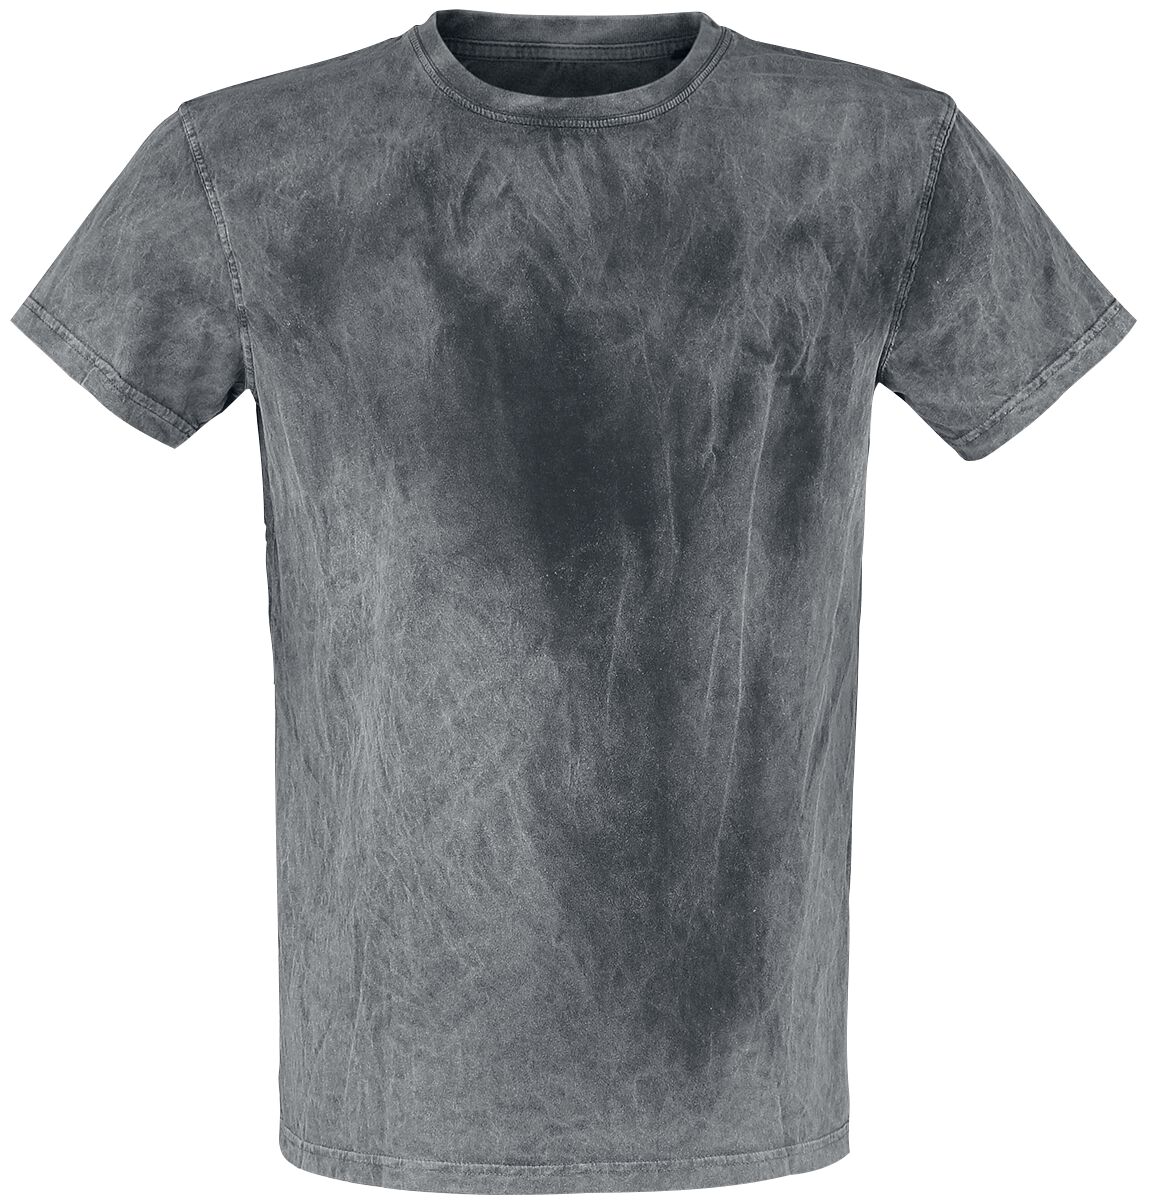 T-Shirt Manches courtes de Outer Vision - T-Shirt Homme - S à XXL - pour Homme - gris